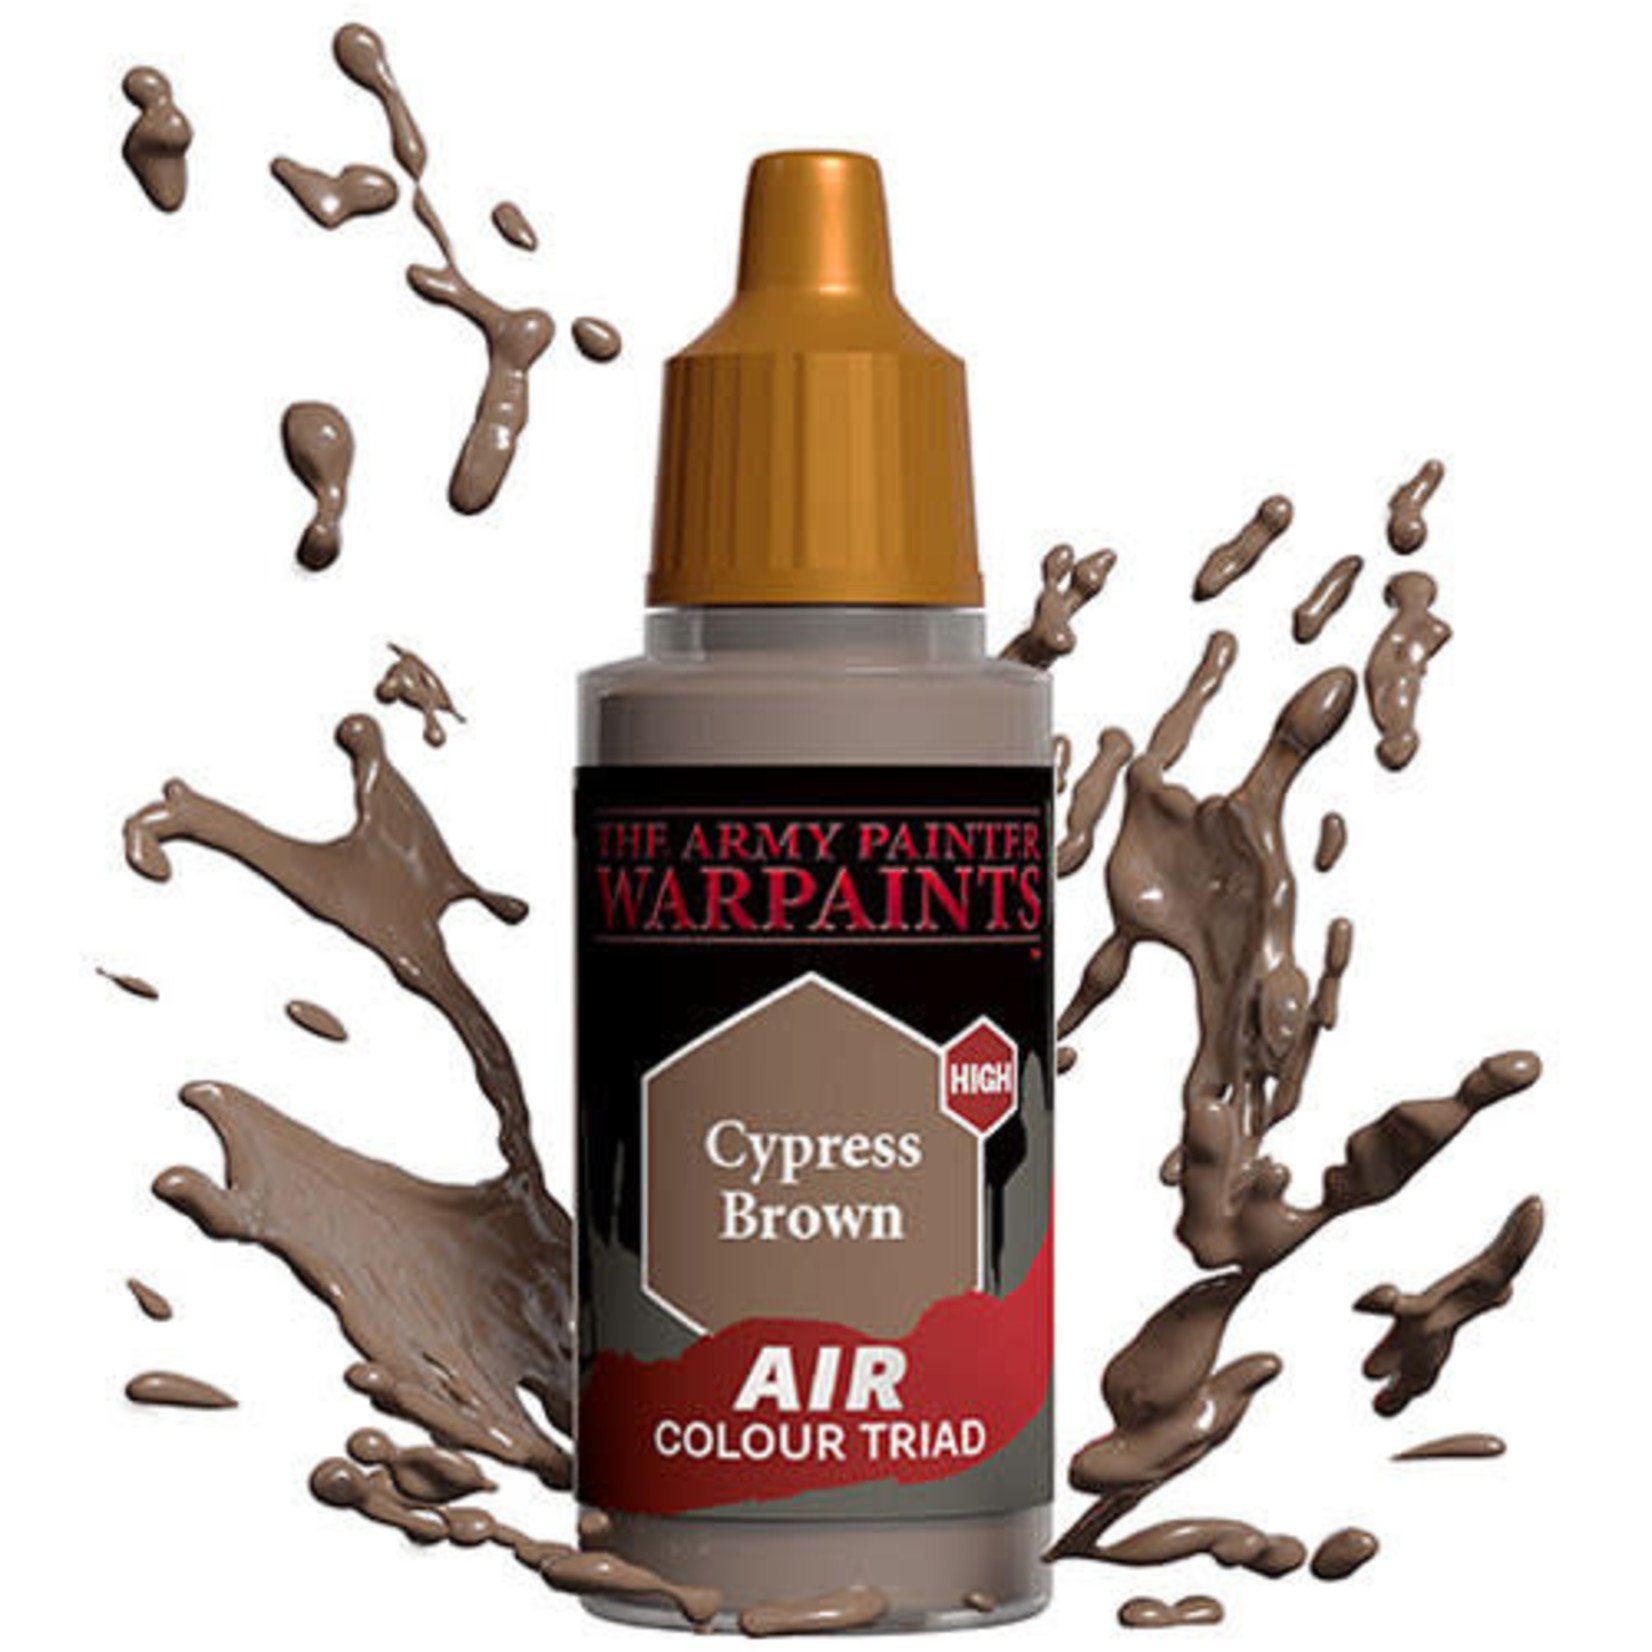 Army Painter Warpaints Air: Cypress Brown 18ml